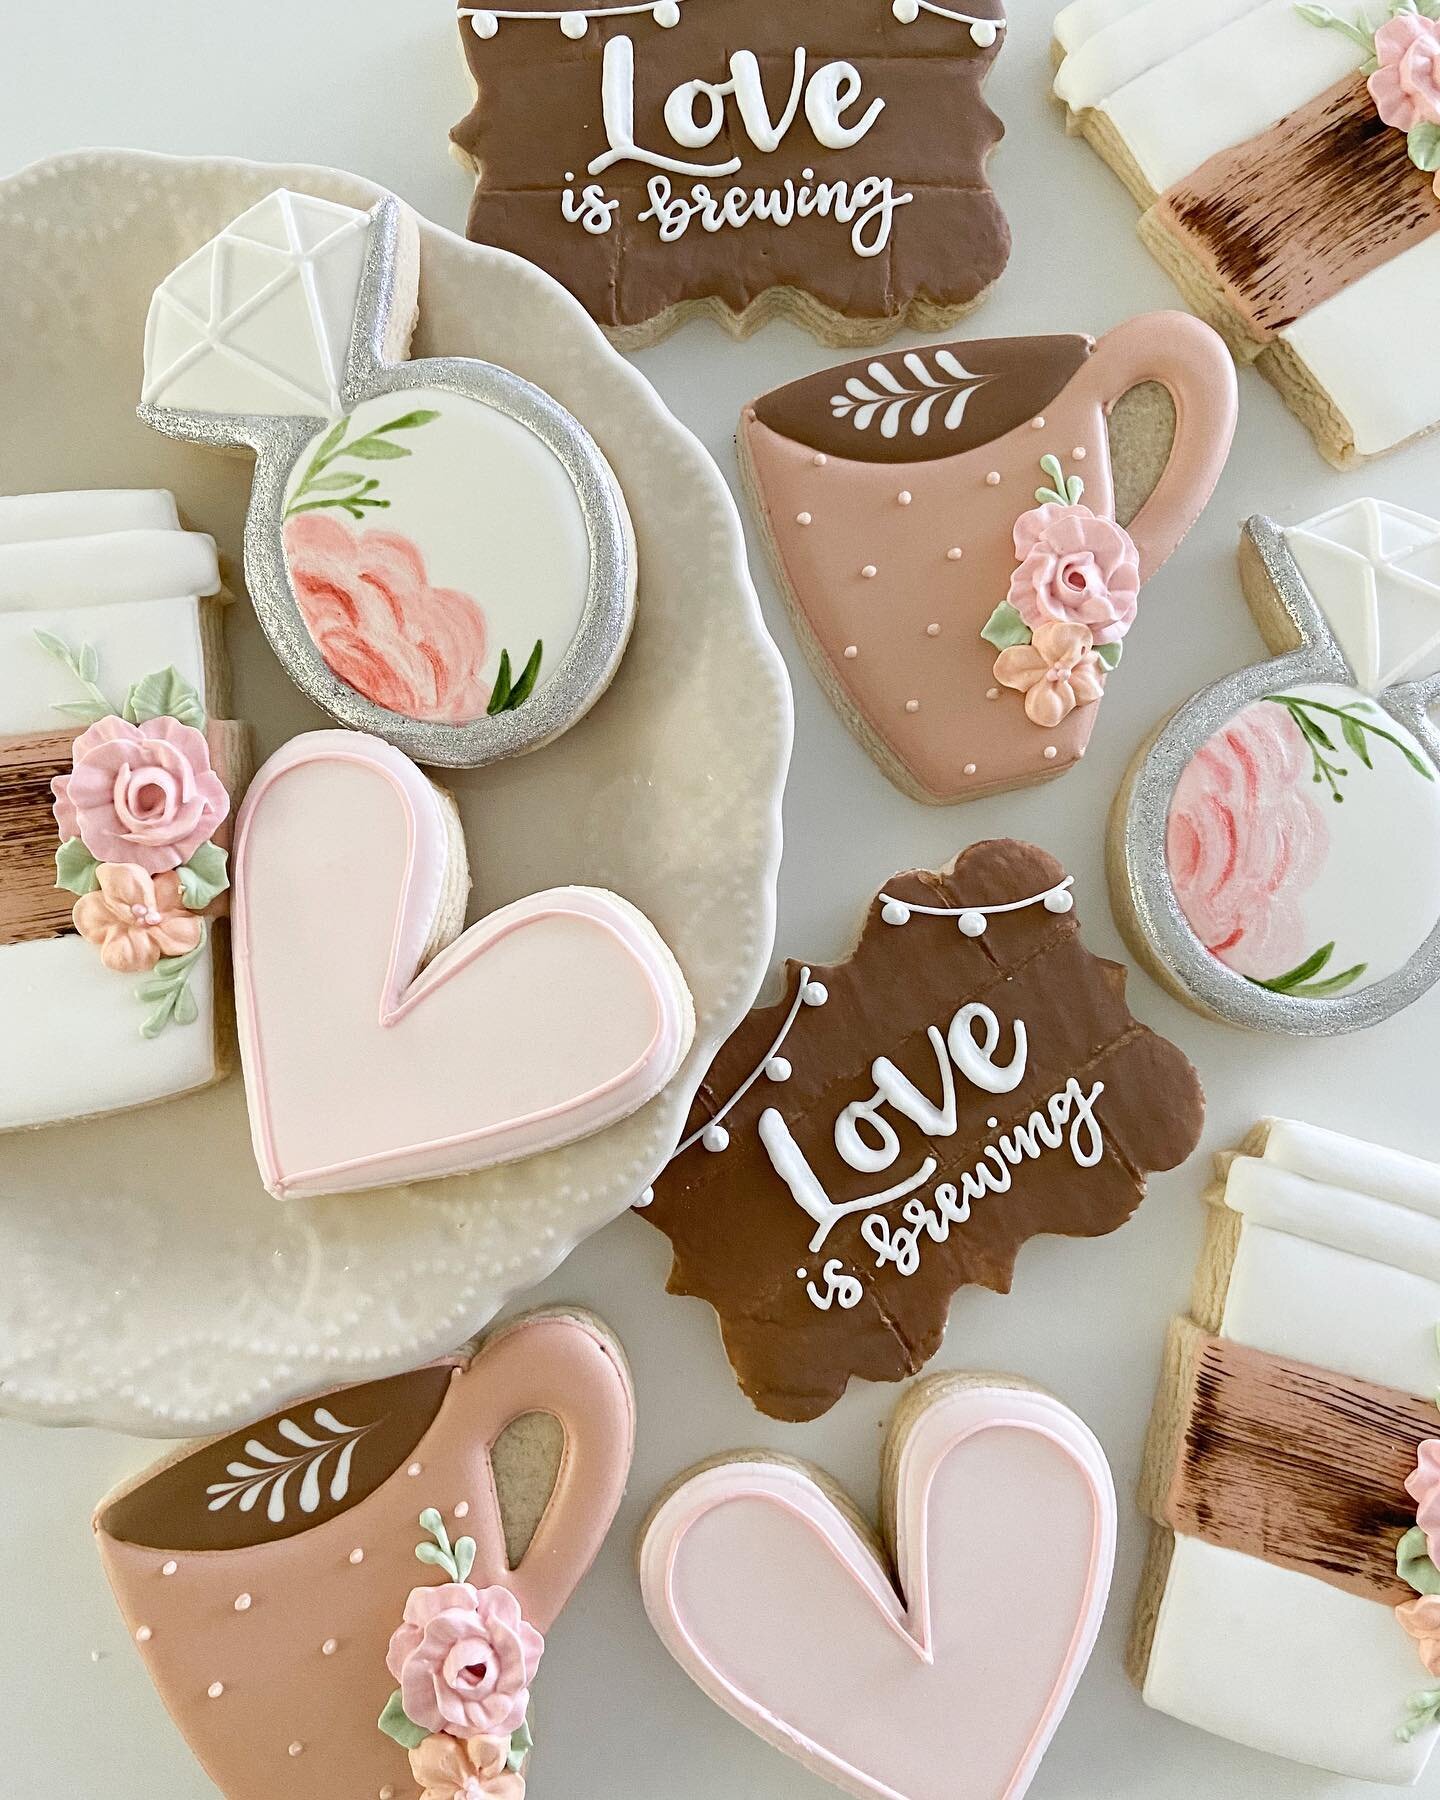 Love is brewing! 🤎

#cookiesofinstagram #sugarcookiesofinstagram #sugarcookies #weddingcookies #bridalshowercookies #coffeecookies #floralcookies #sweetashcookieswv